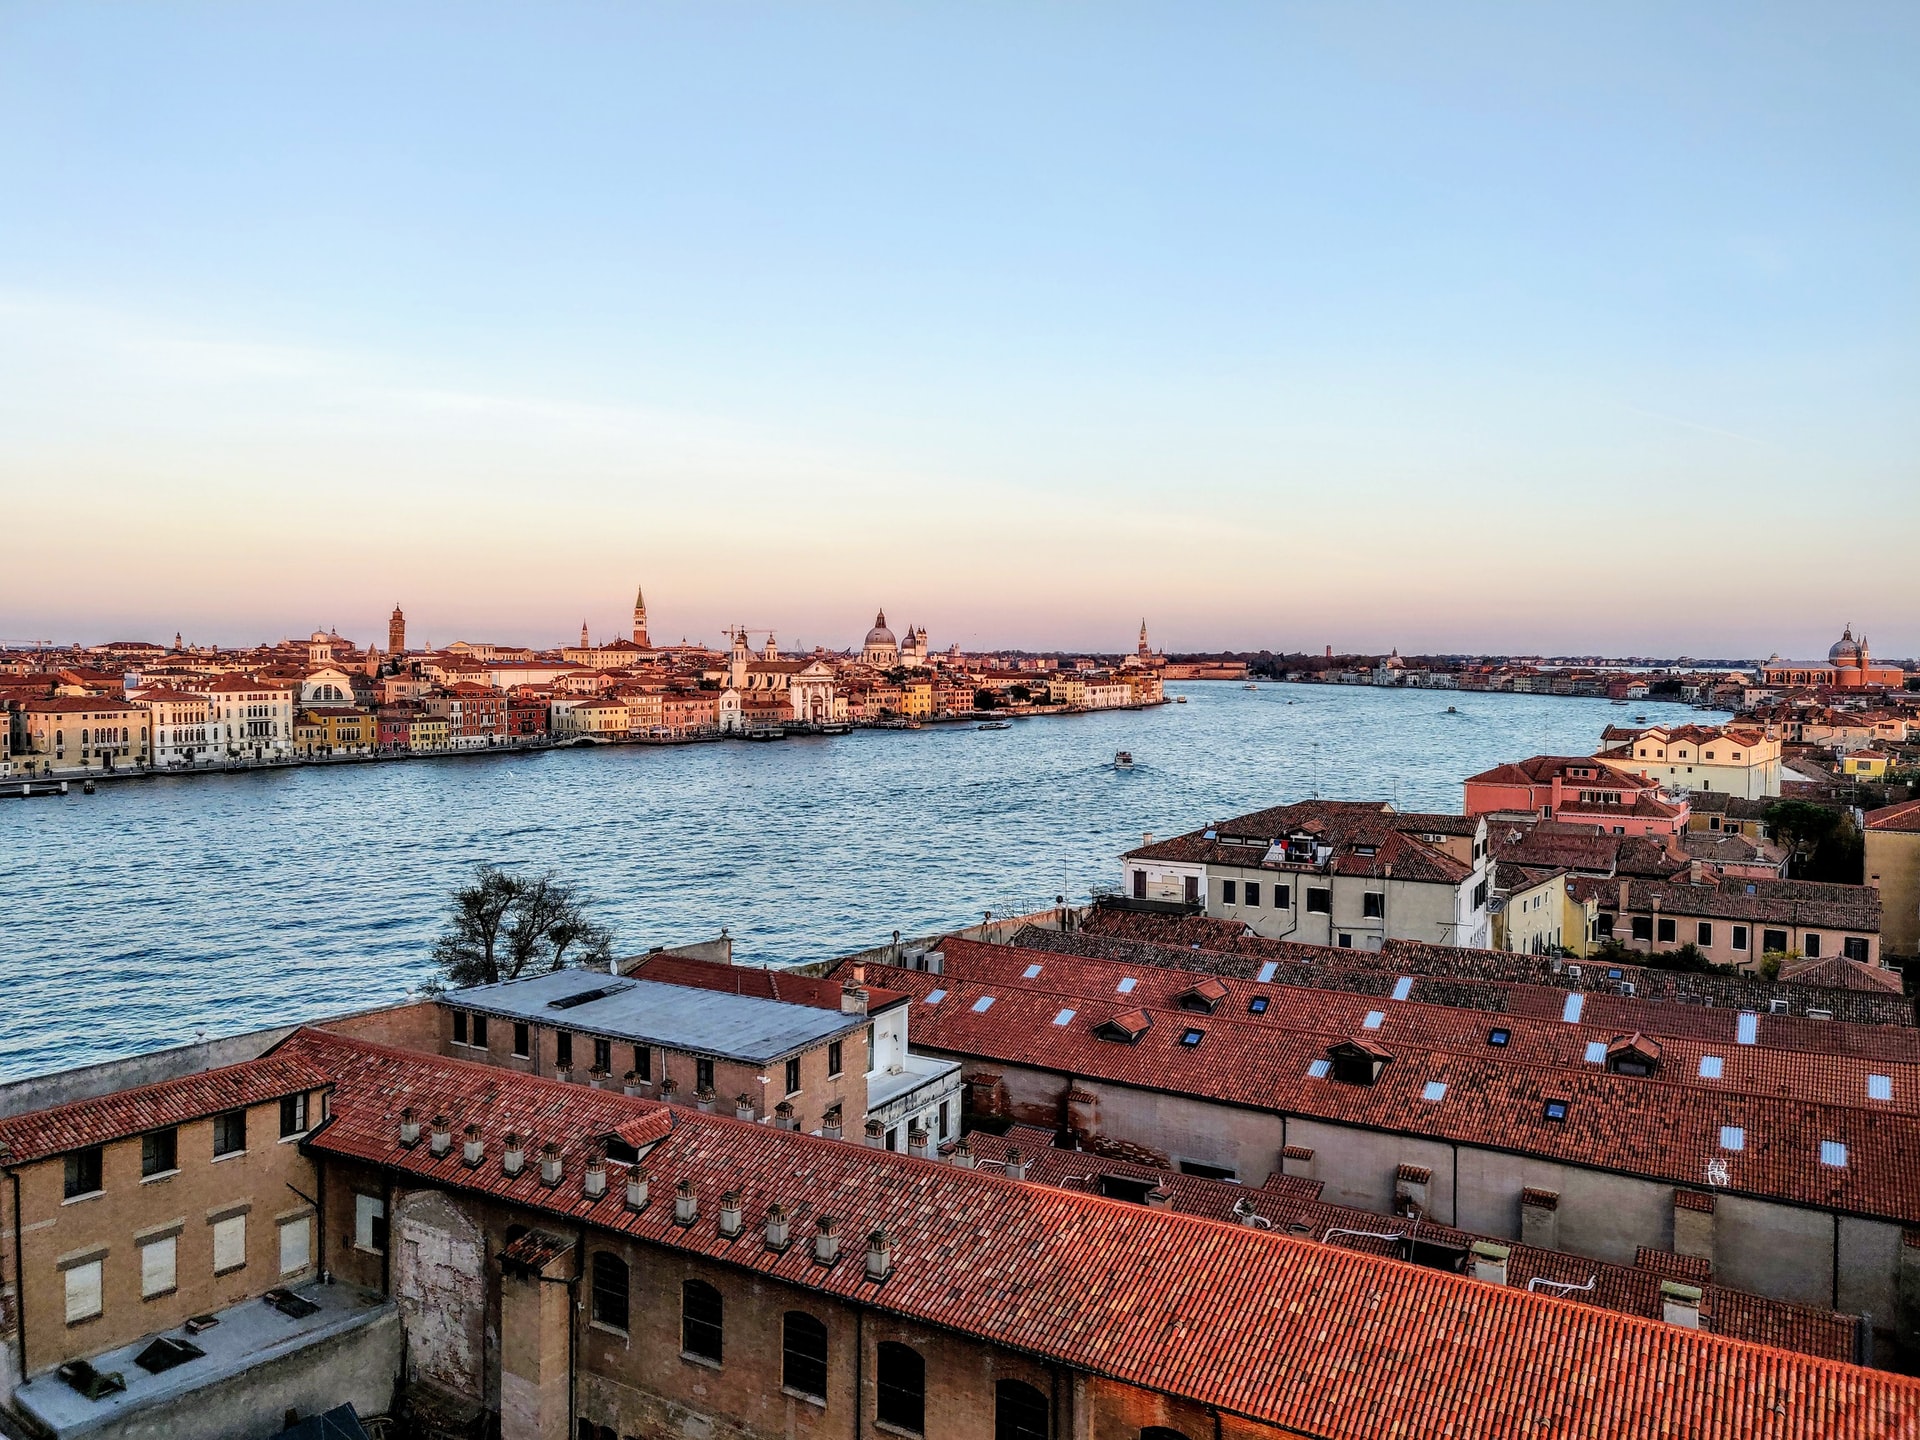 Separada de la isla principal por el canal homónimo, Giudecca parece un mundo alejado de los abarrotados barrios centrales de Venecia